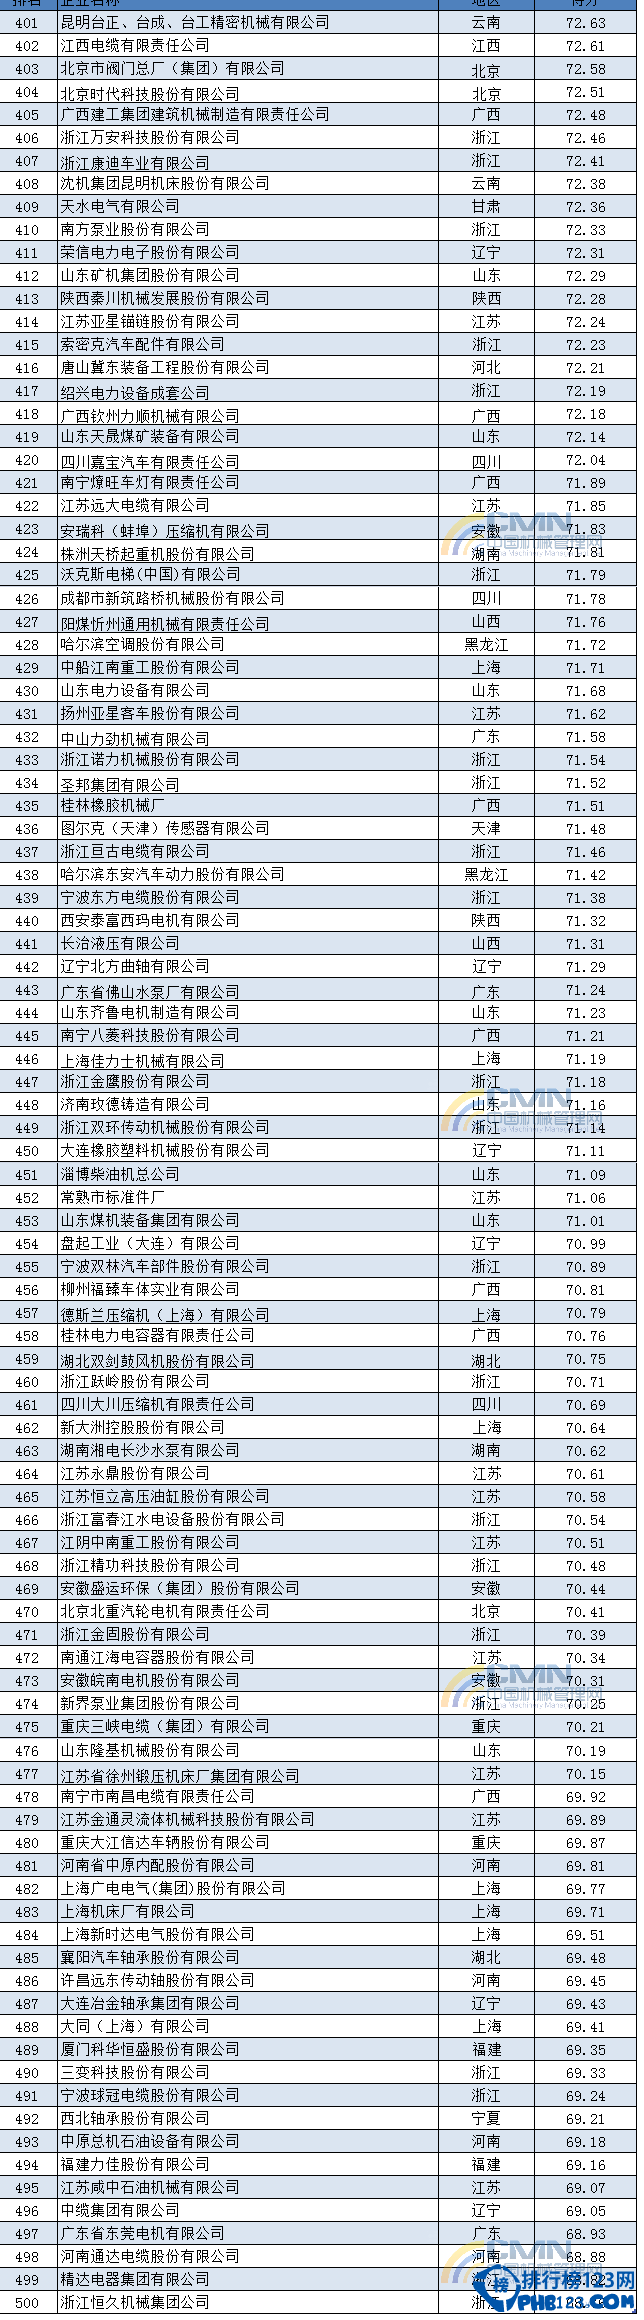 2014中国机械500强排行榜